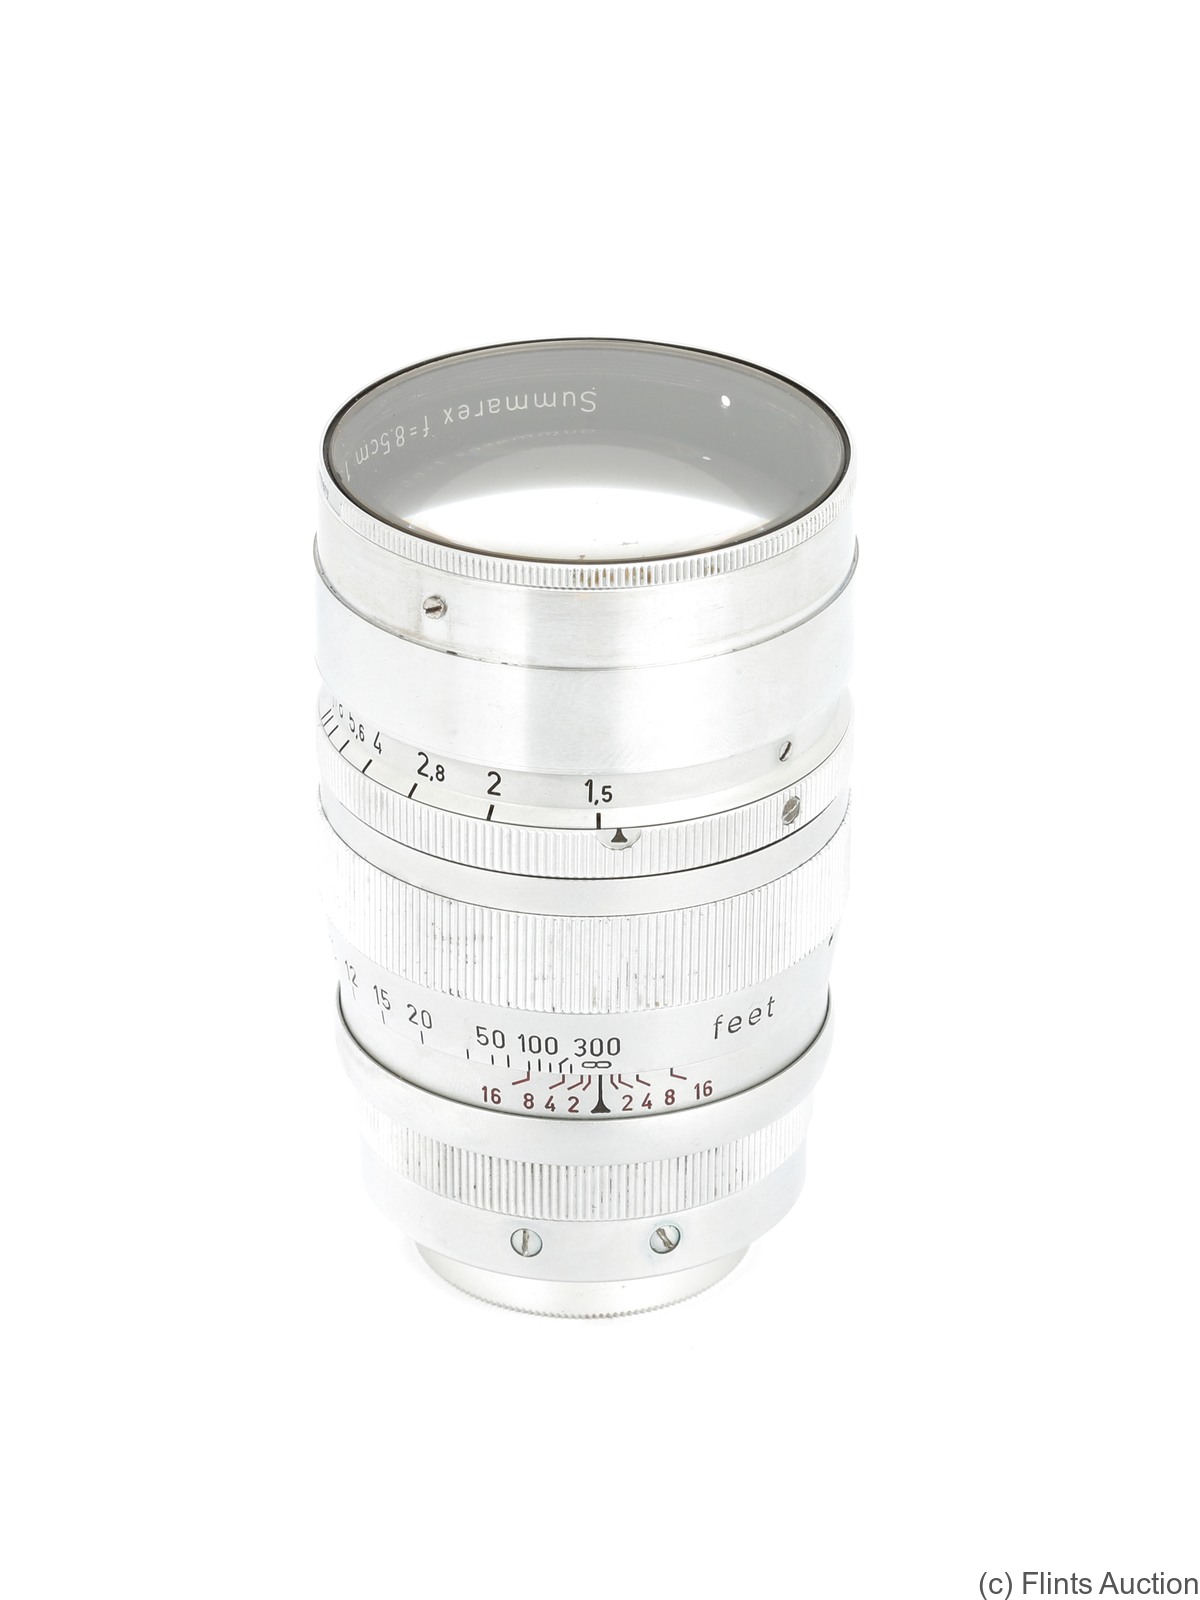 Leitz: 85mm (8.5cm) f1.5 Summarex (SM, chrome) camera